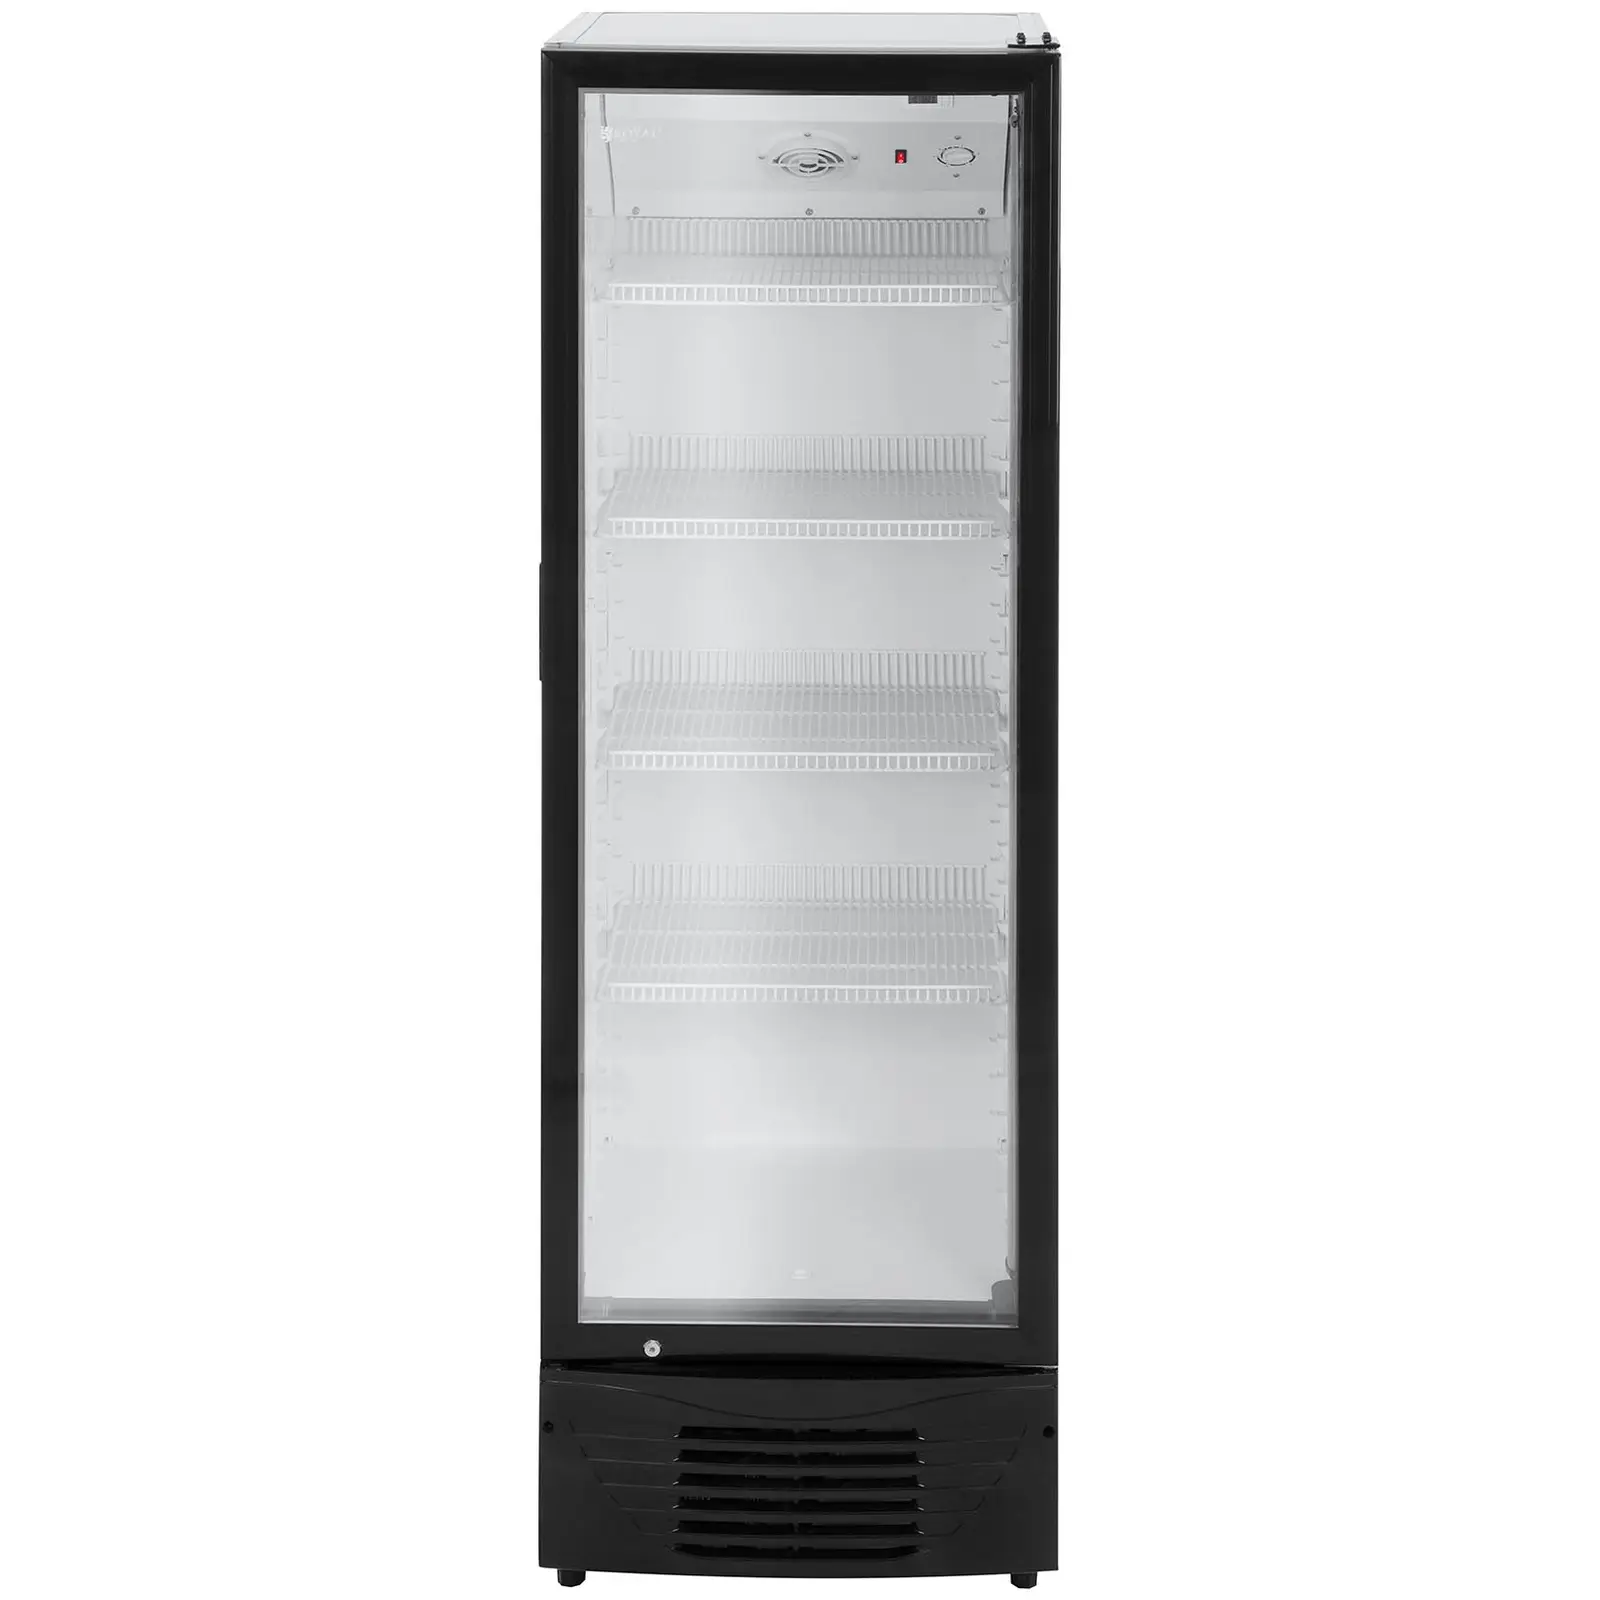 Vetrina frigo per bibite - 320 L - LED - Telaio nero